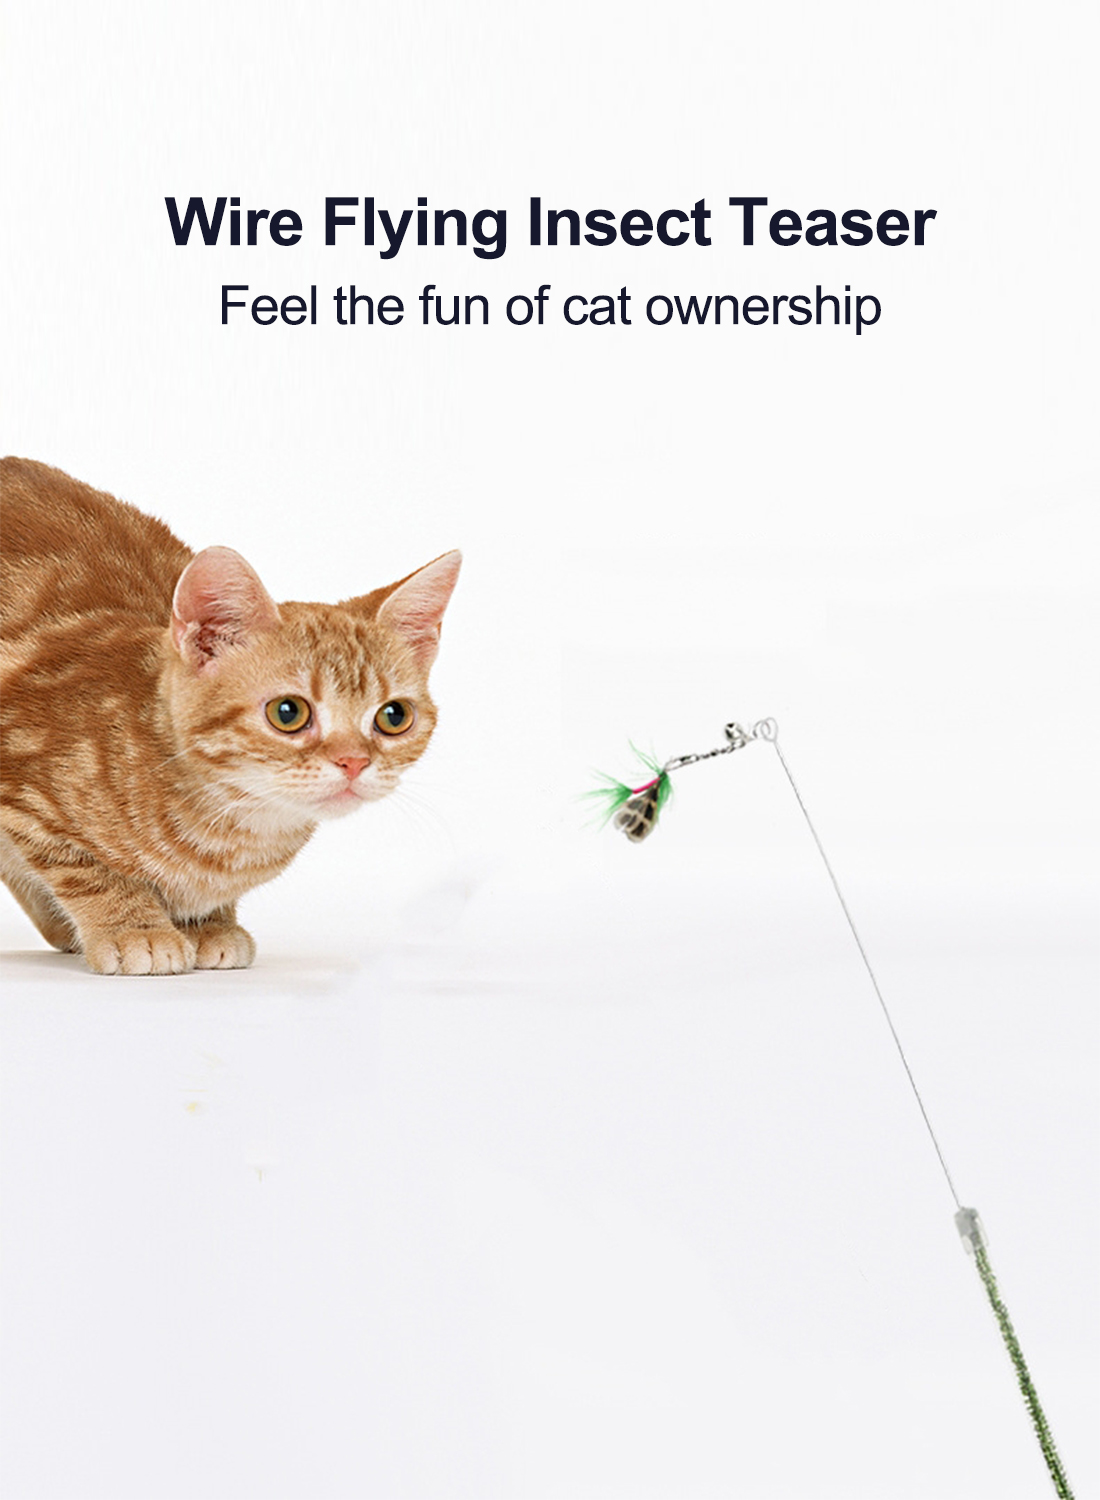 قابل للسحب نوع صغير يطير الحشرات العض الجهاز عصا القط القط لعبة الحيوانات الأليفة التفاعلية رئيس الريش استبدال العض الجهاز